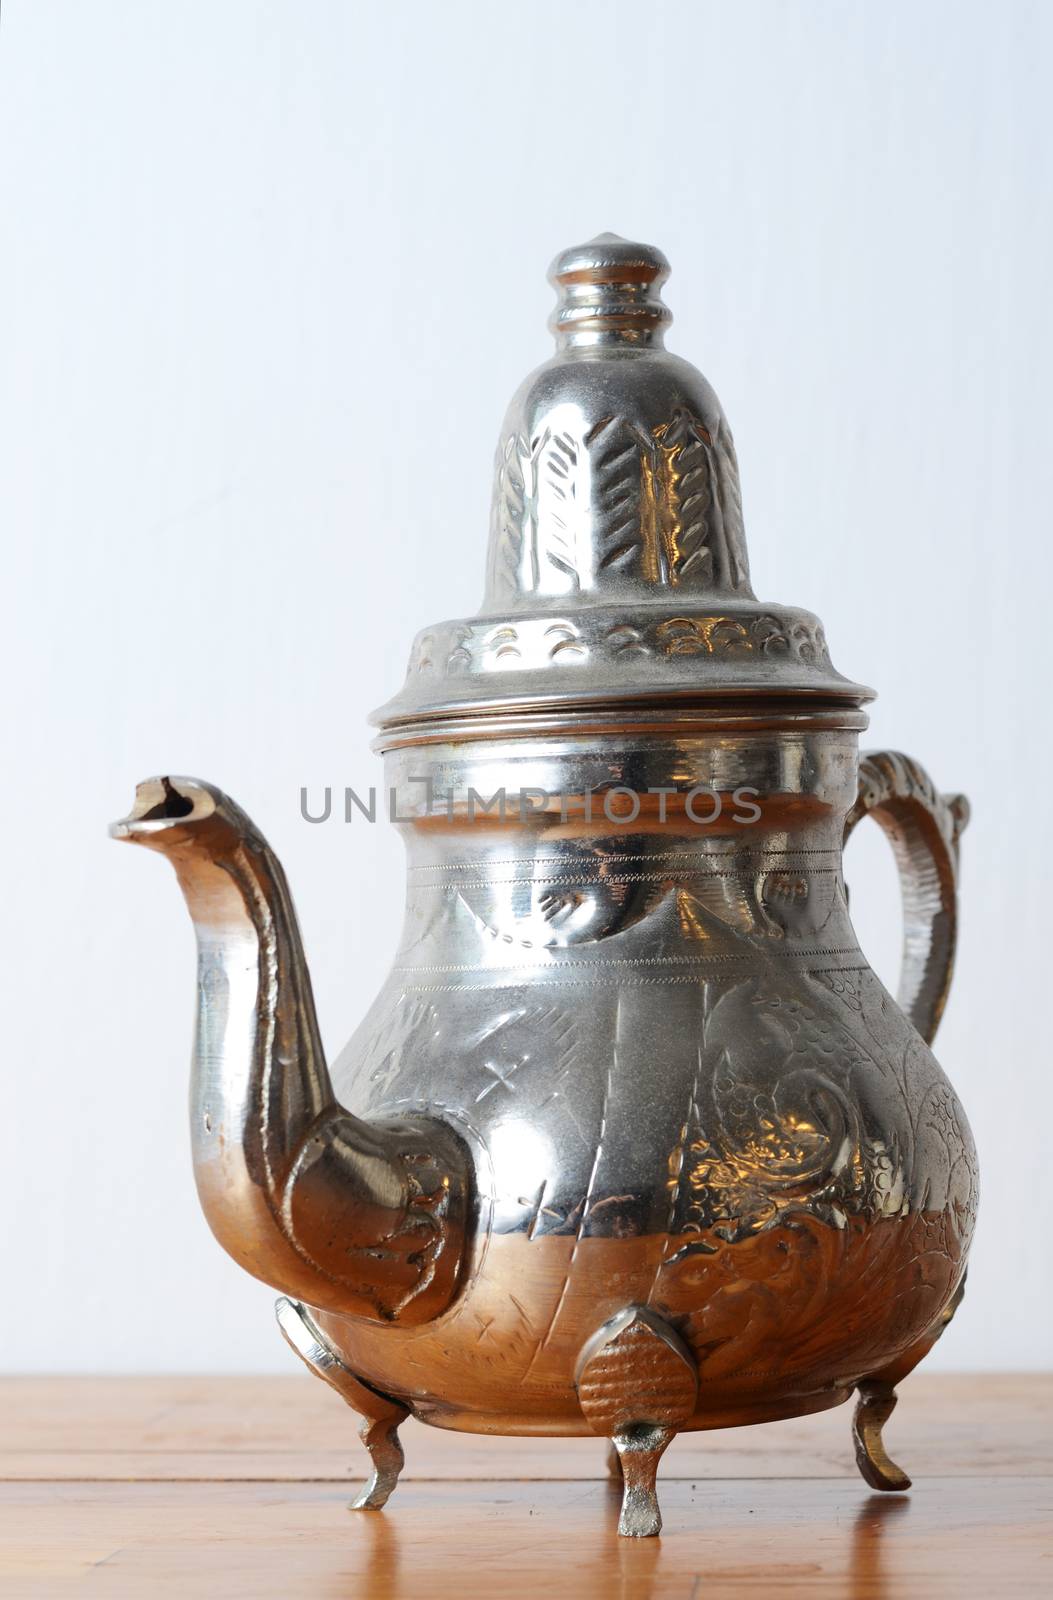 antique jug by sarkao